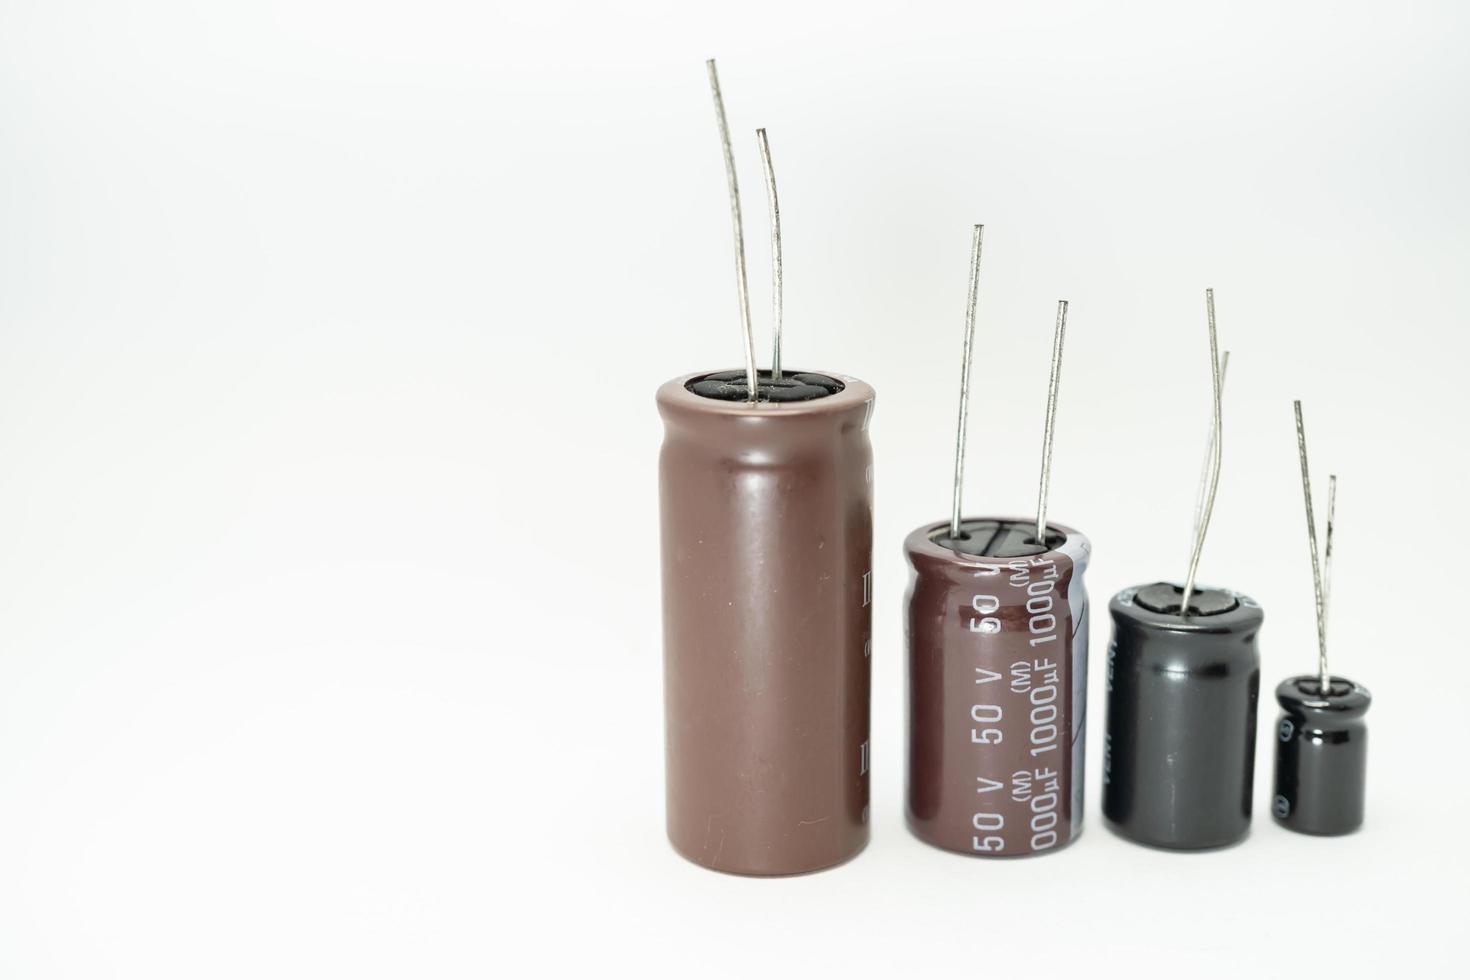 groupe isolé de condensateur, utilisé dans un appareil électronique. concept de pièces électroniques. photo